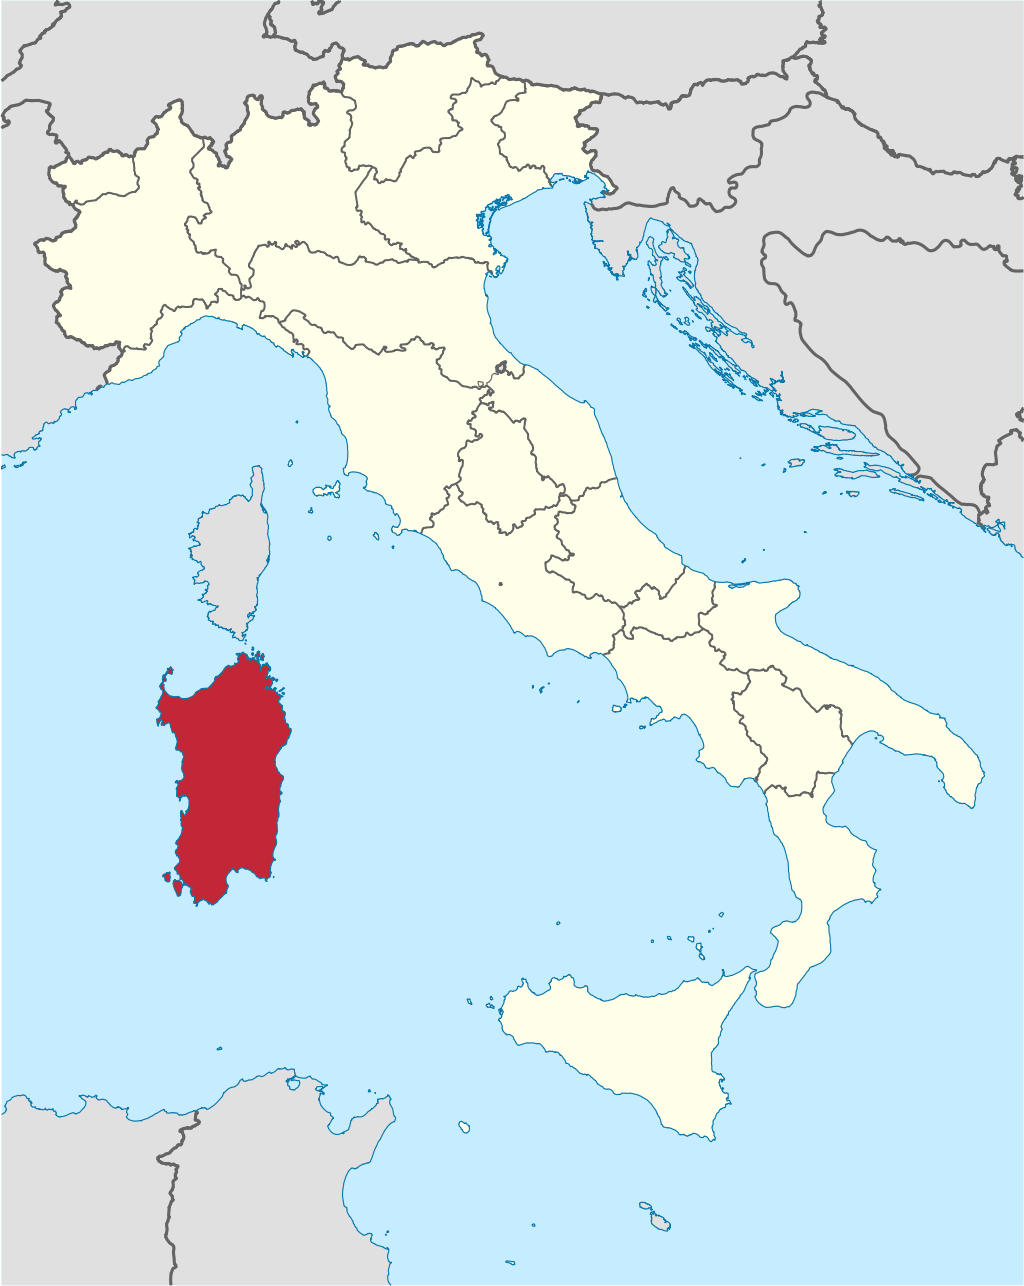 Church Della Urbex location or around the region Sardegna (Oristano), Italy